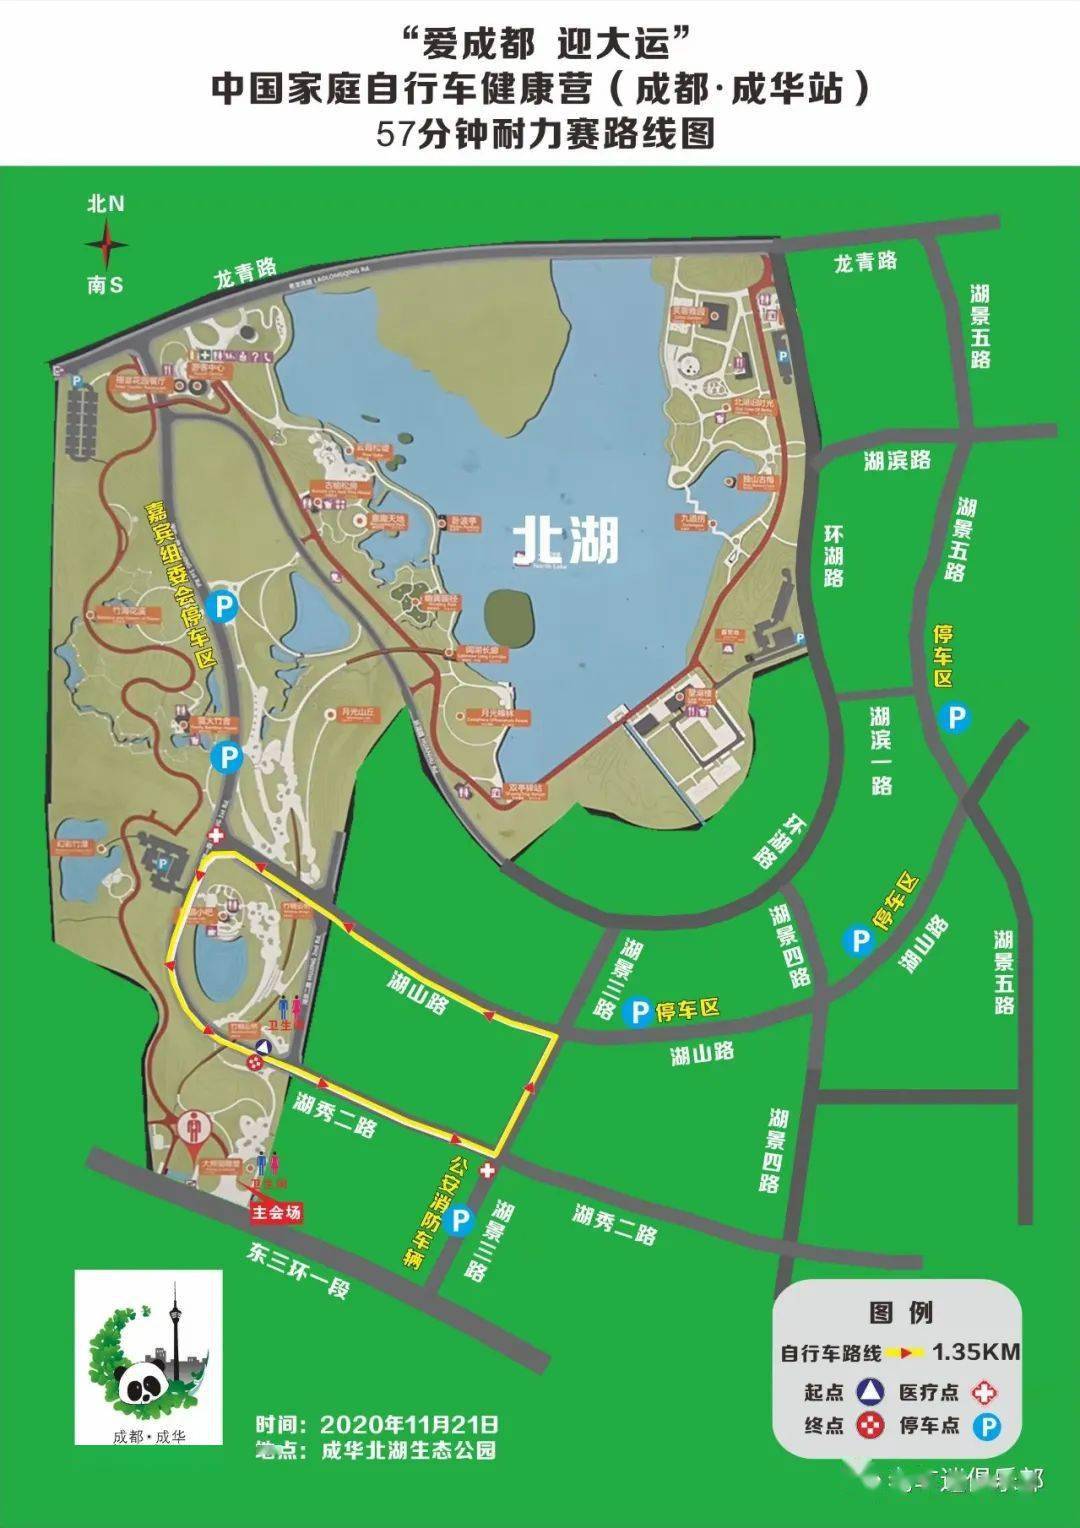 30-9:20 报到地点 北湖生态公园熊猫广场 地图搜索 赛道平面图